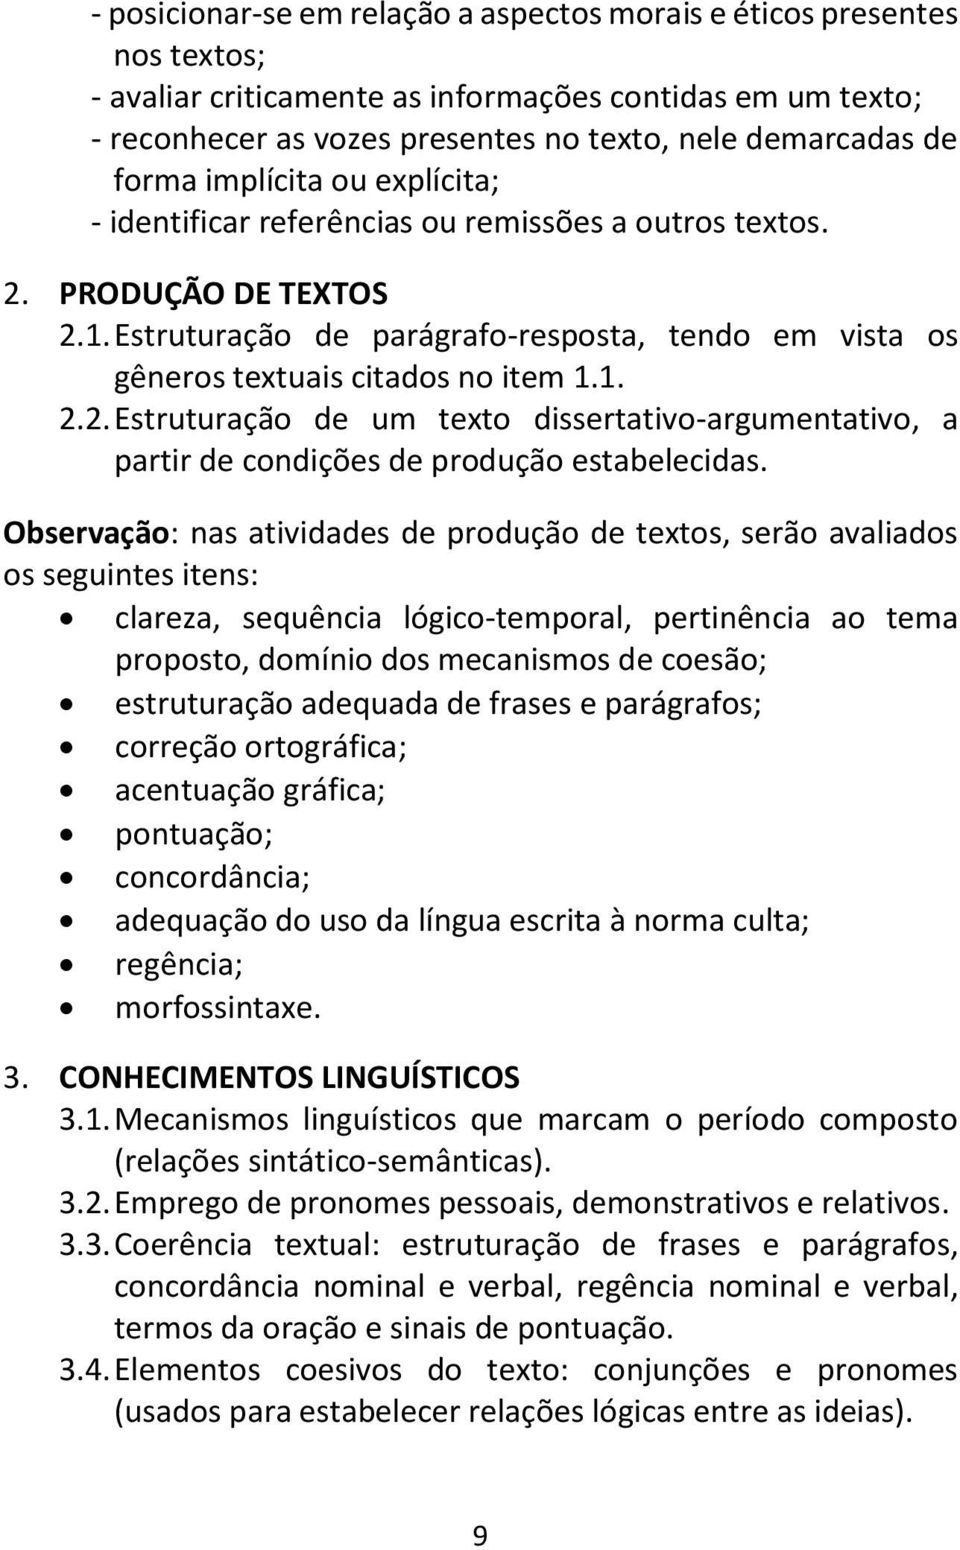 Estruturação de parágrafo-resposta, tendo em vista os gêneros textuais citados no item 1.1. 2.2. Estruturação de um texto dissertativo-argumentativo, a partir de condições de produção estabelecidas.